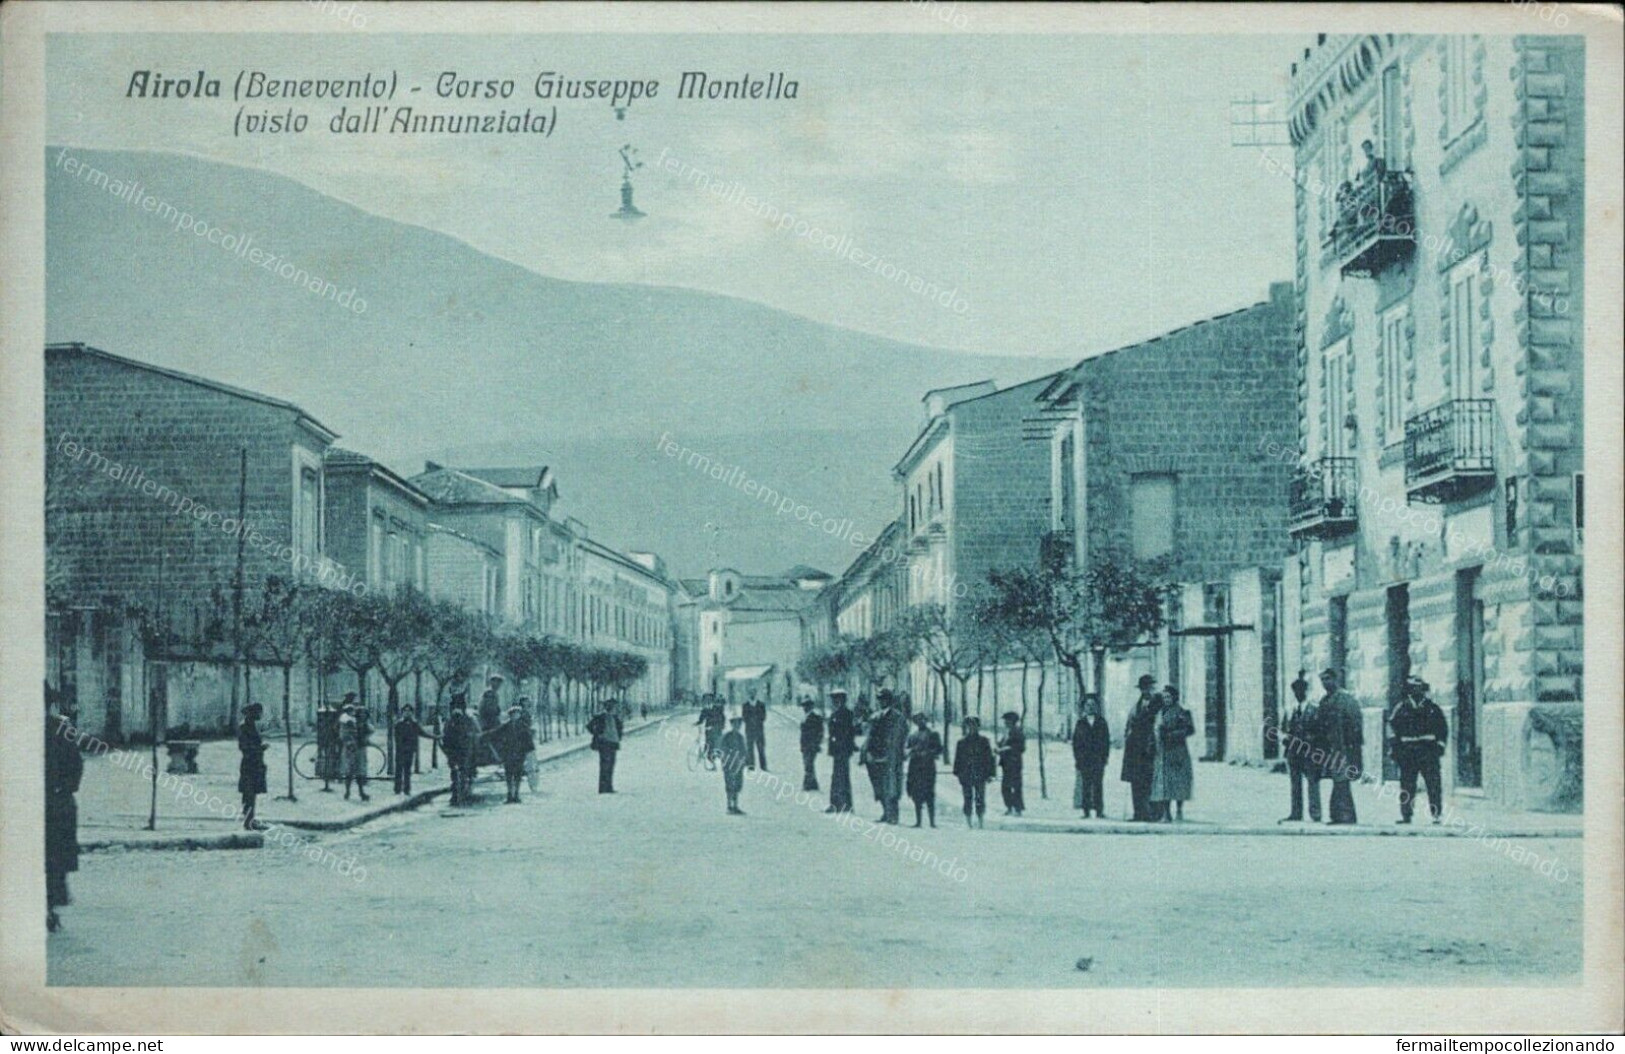 Cs123 Cartolina Airola Corso Giuseppe Montella Benevento Bella! 1935 - Benevento